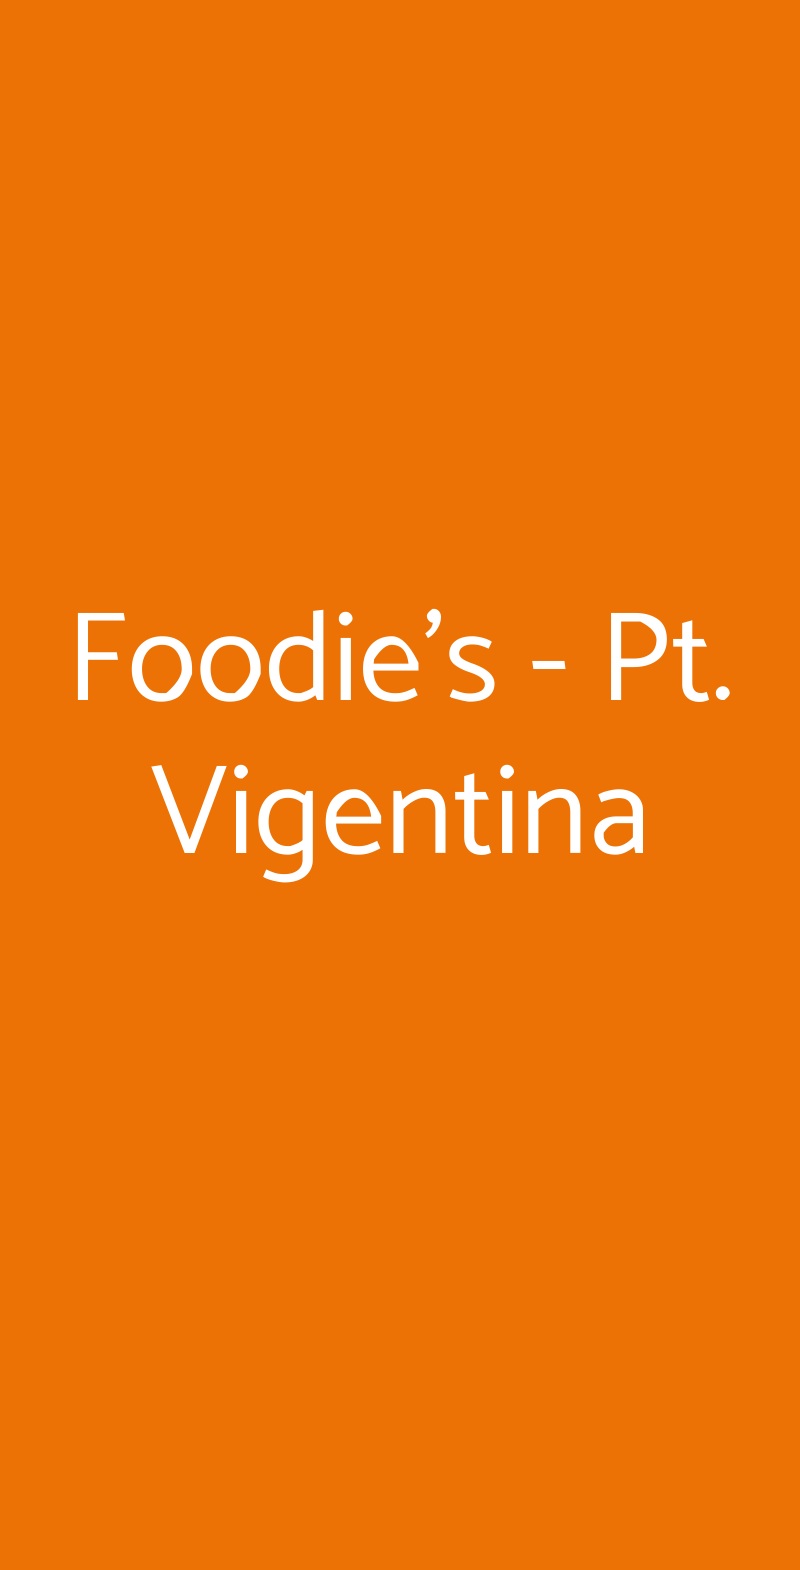 Foodie's - Pt. Vigentina Milano menù 1 pagina